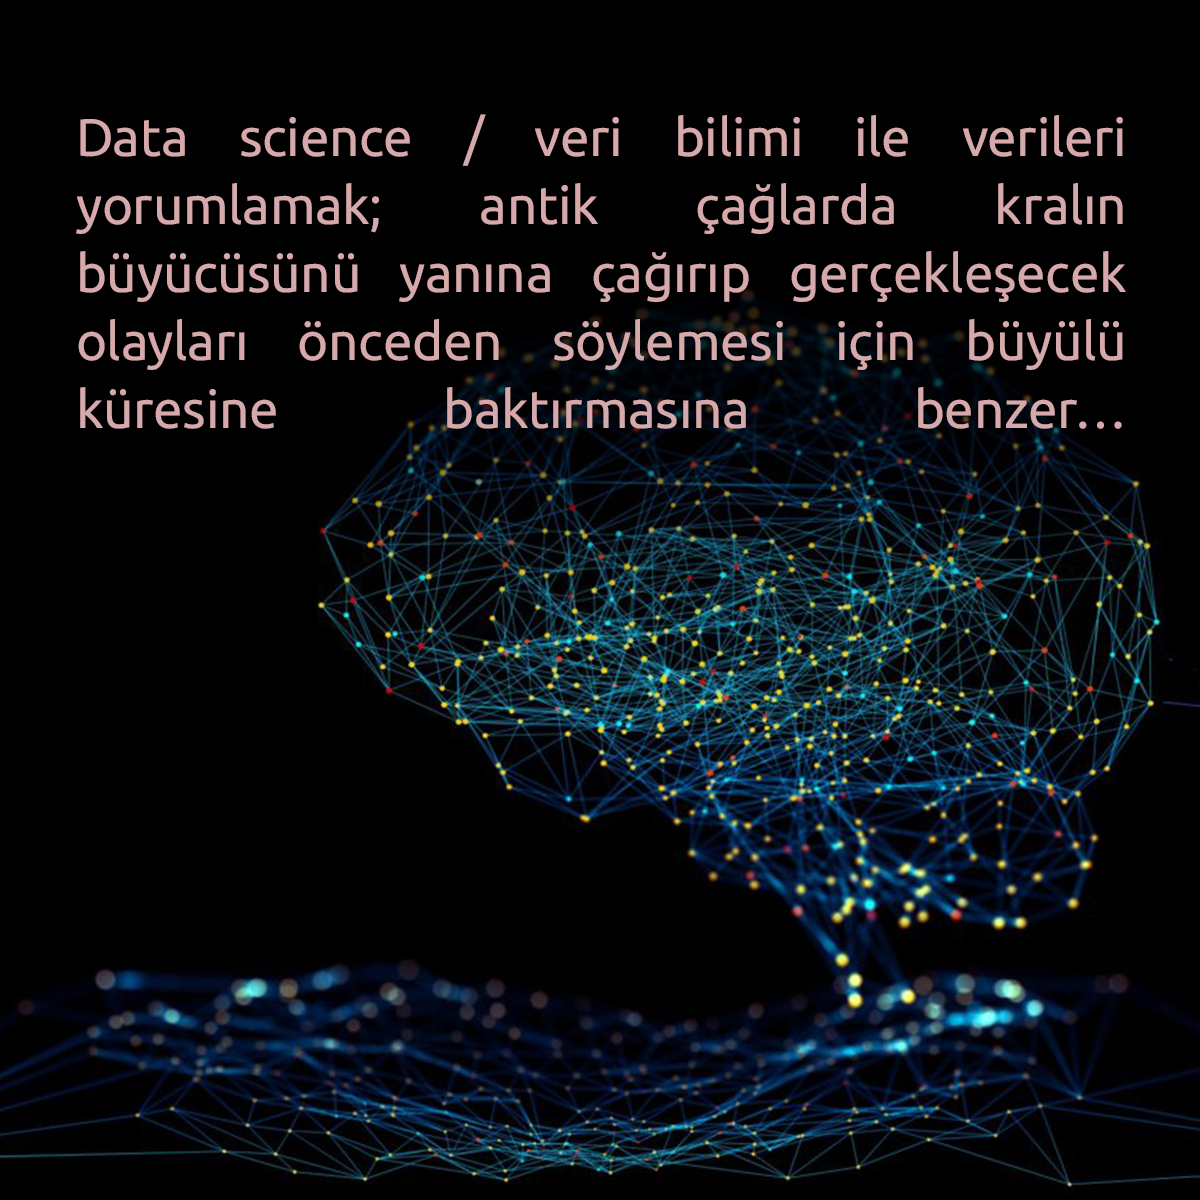 Yazının tamamına gitmek için tıklayın: zamaninotesi.com/data-science-v… Data science ile verileri yorumlayan homo sapiensten (homo sapiens 'bilen insan' demek), verilerin kendisi 'olan insana' yani “insanı-ı kamil” olma yolculuğumuzda bu 'sefer' veri bilimi konusunu inceliyoruz...